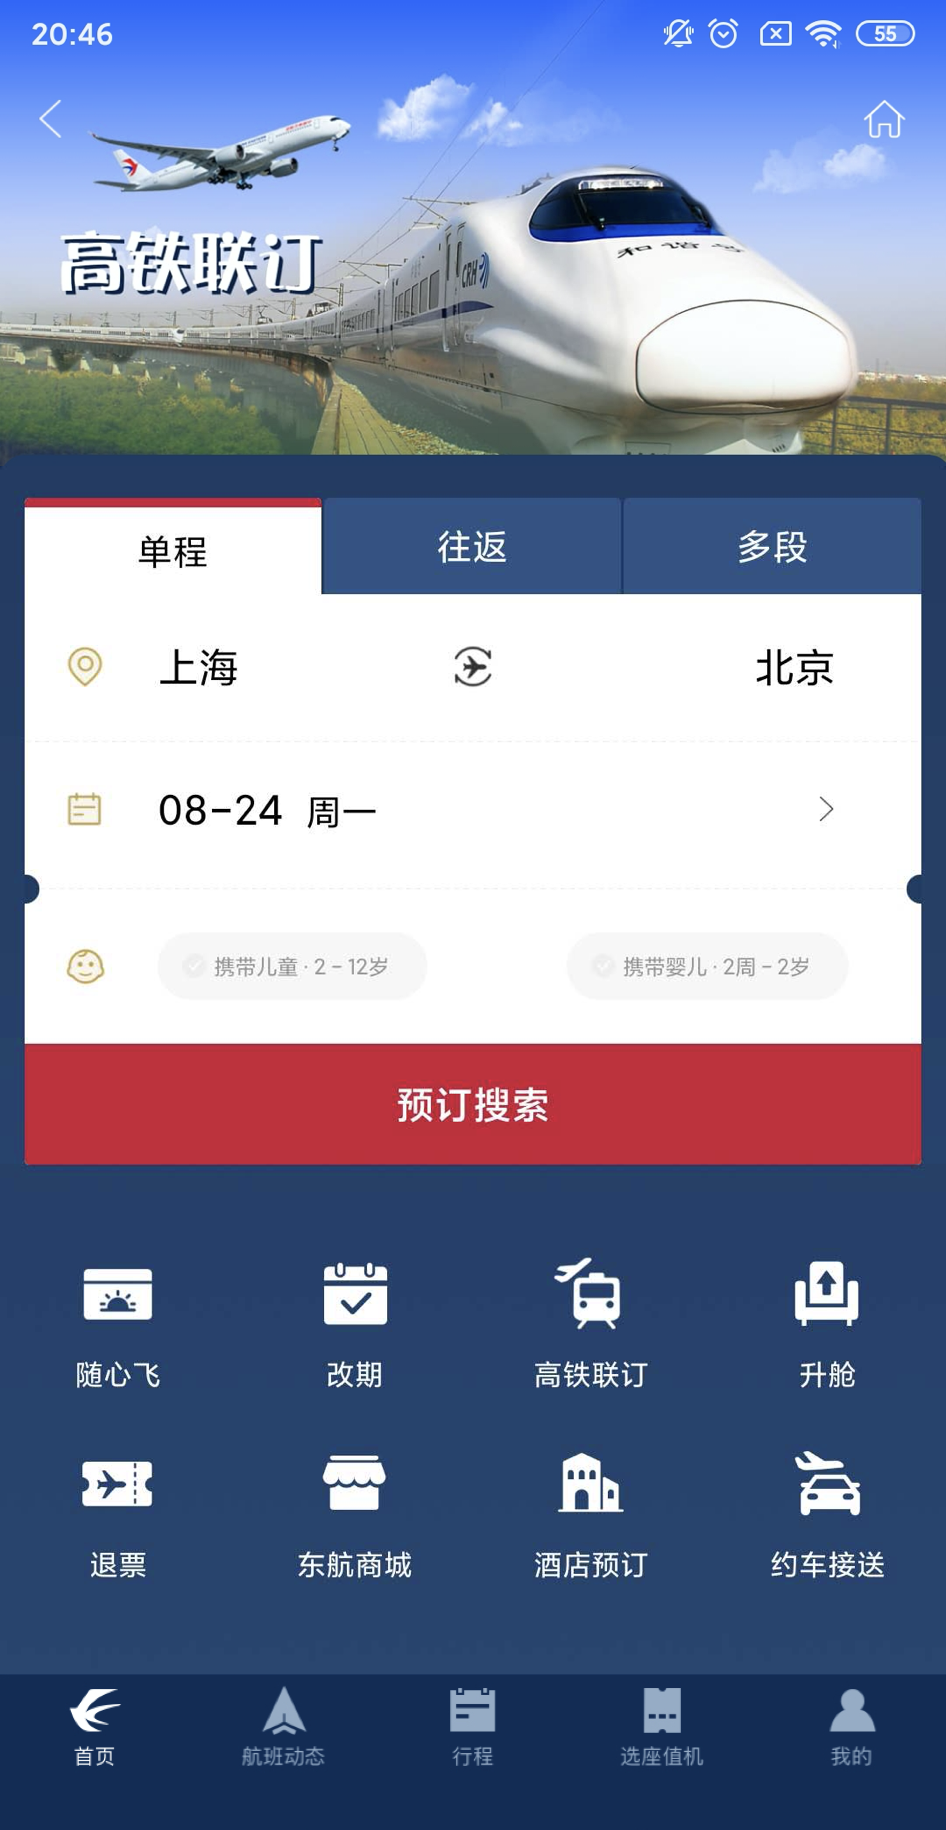 [飞机号APP中文版]飞机app中文版官方下载